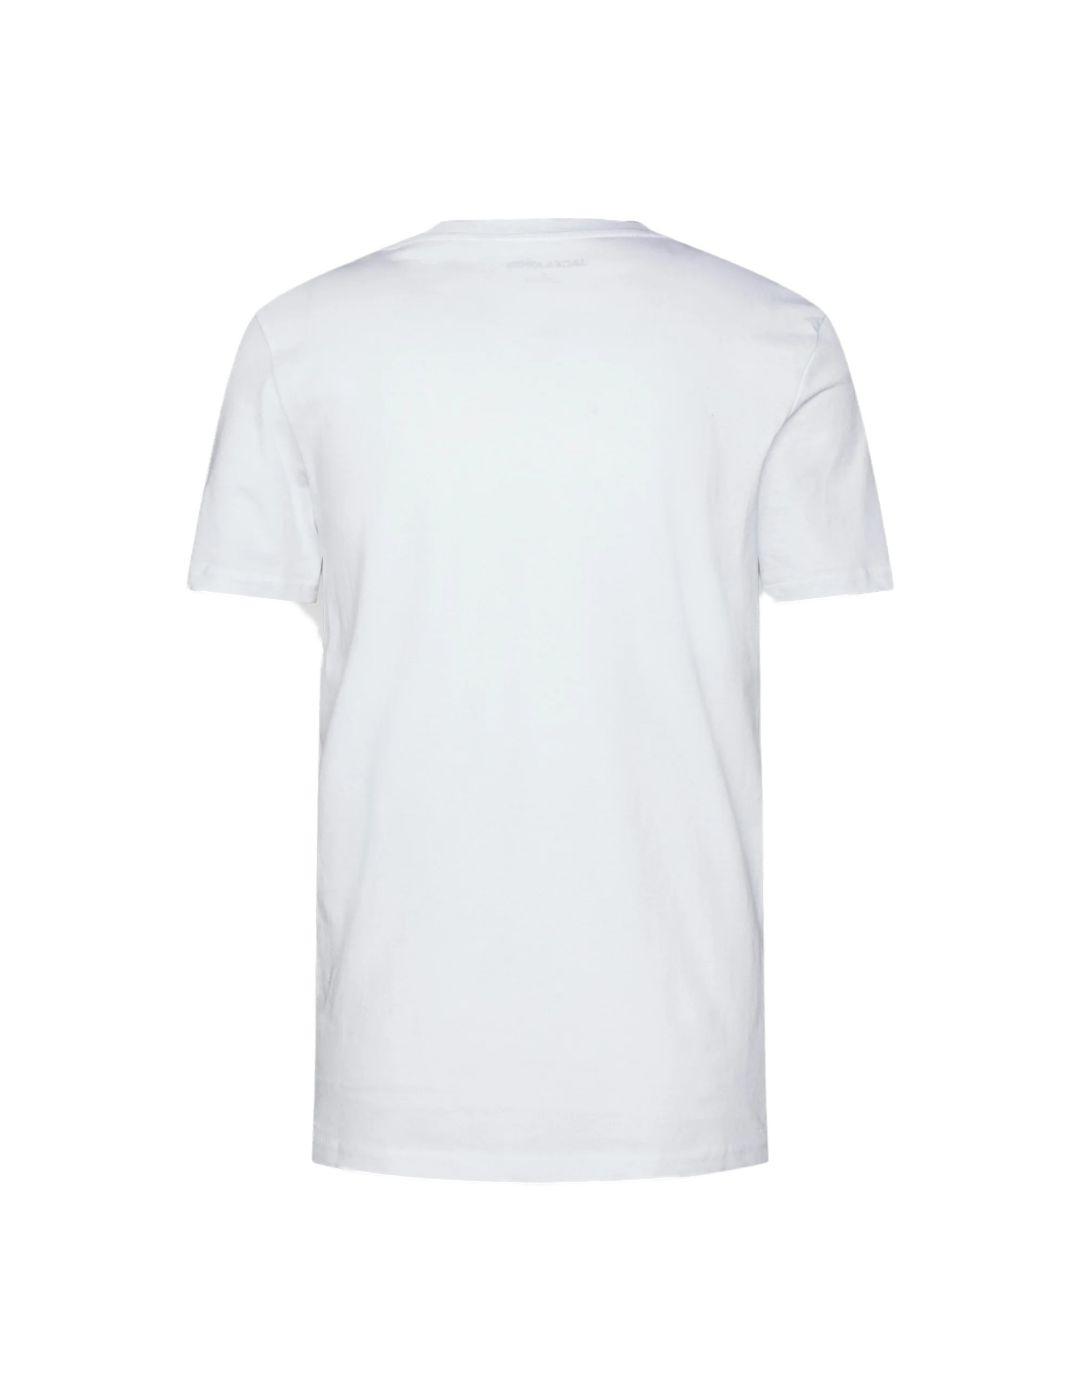 Camiseta Jack&Jones Billboard blanco para hombre-a